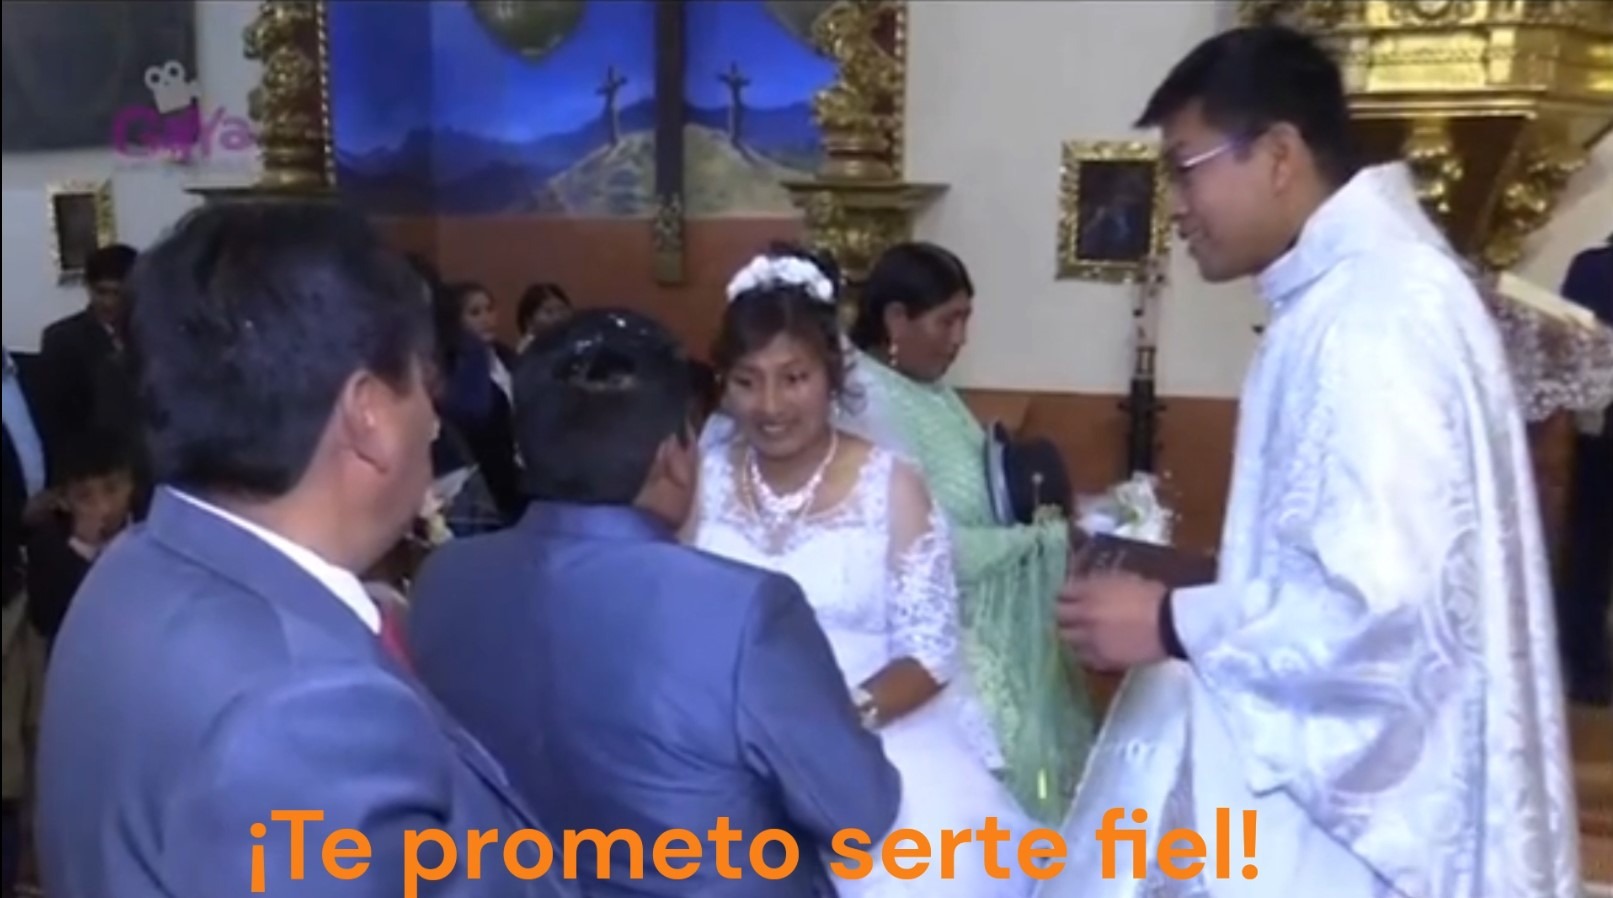 El sacerdote perdió la paciencia ante la mirada de la novia/ Foto: Captura viral de Tik Tok